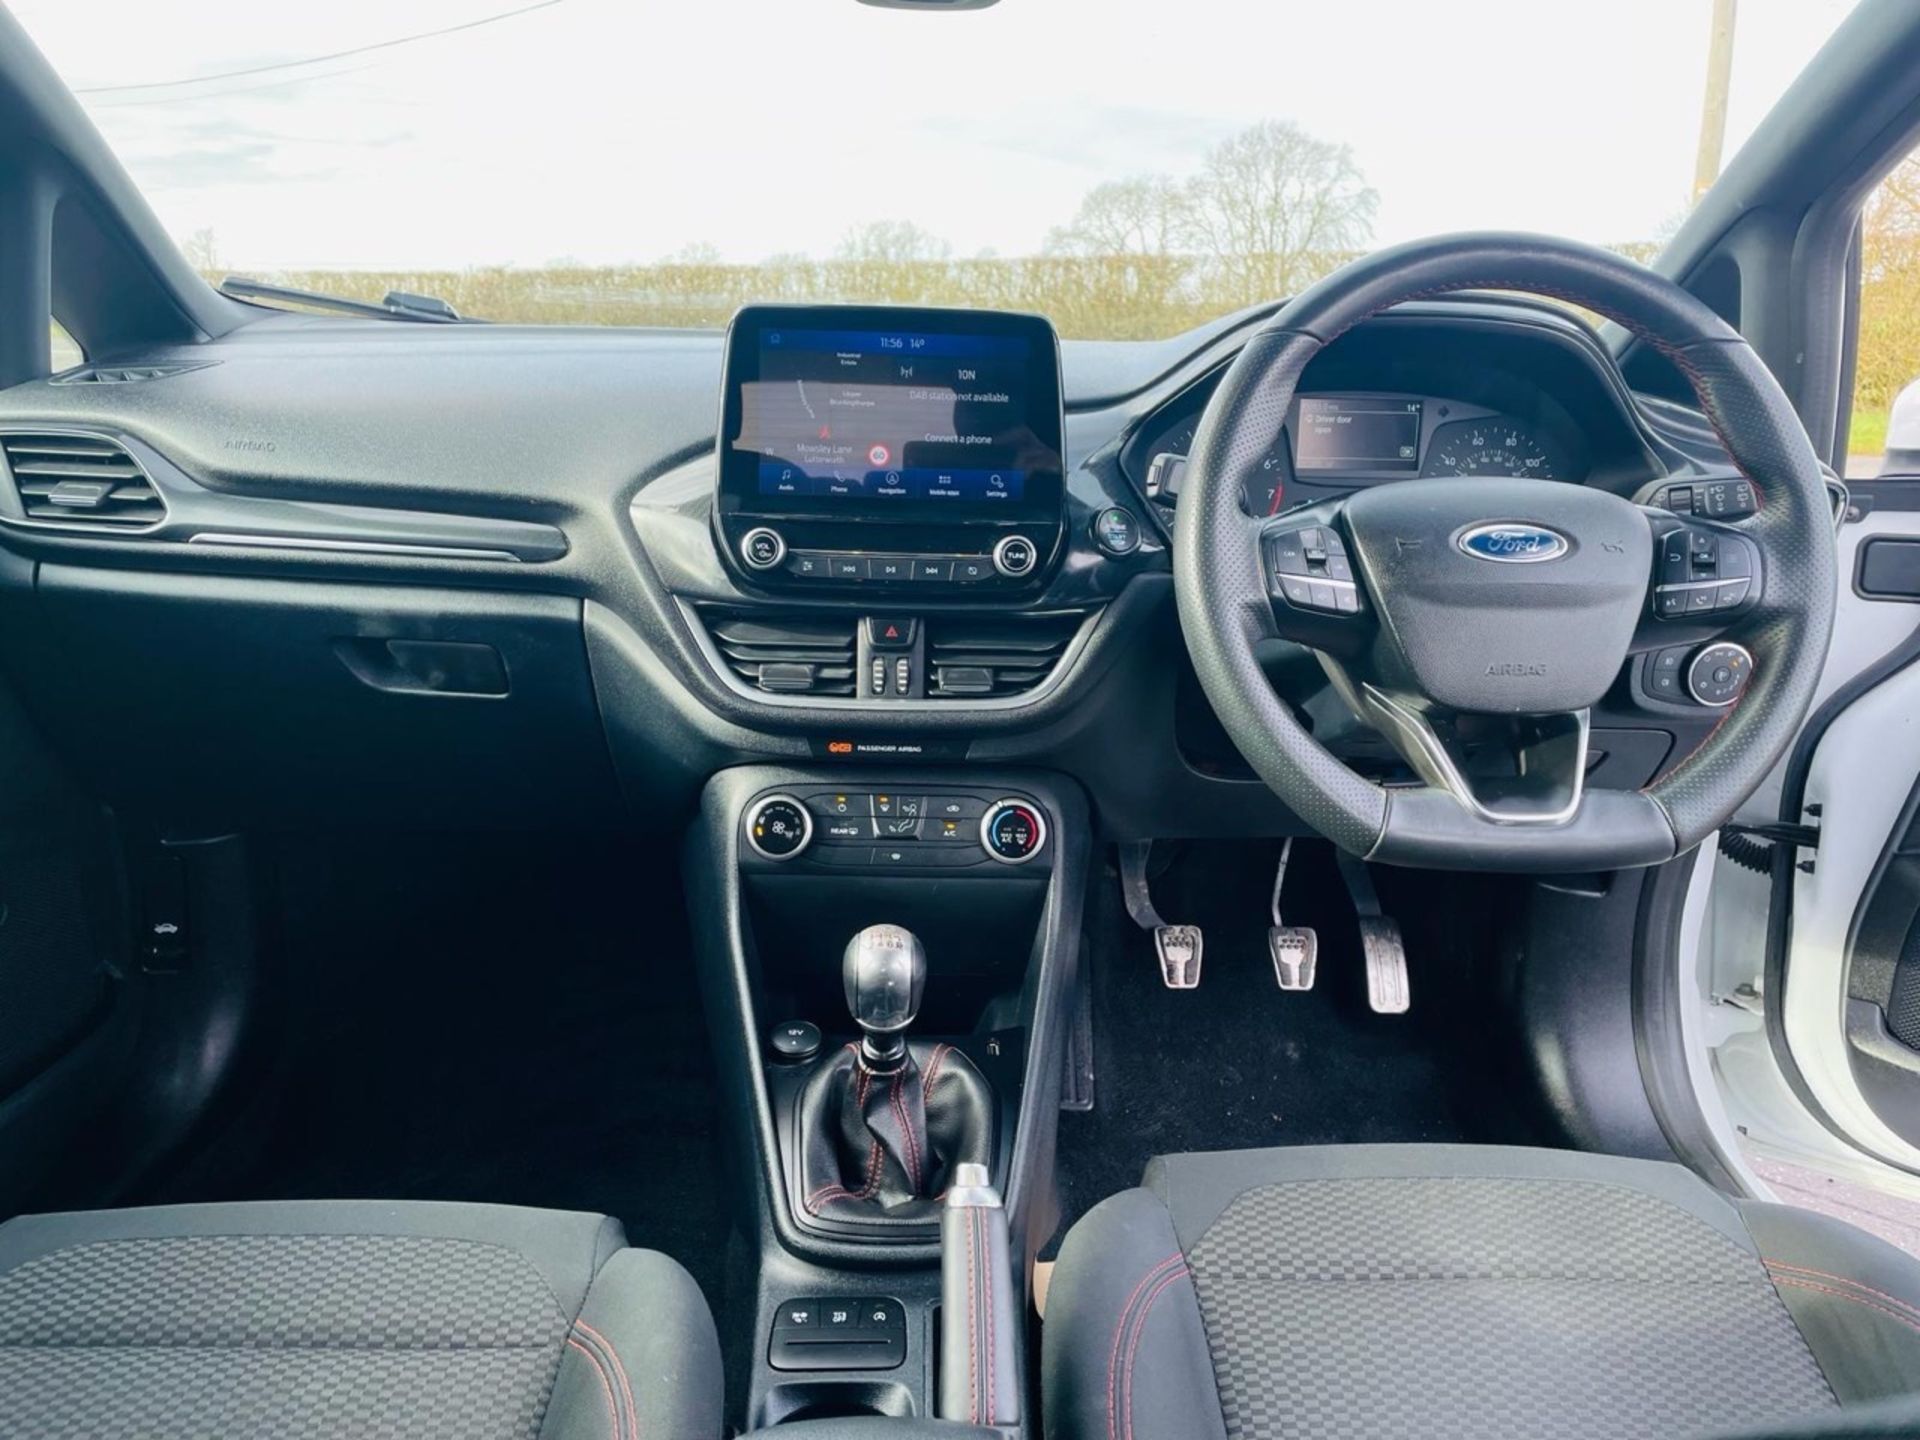 Ford Fiesta " ST-LINE EDITION TURBO " 5dr Hatchback - 2021 21 Reg - 1 Owner - Sat Nav - (NEW SHAPE) - Image 9 of 14